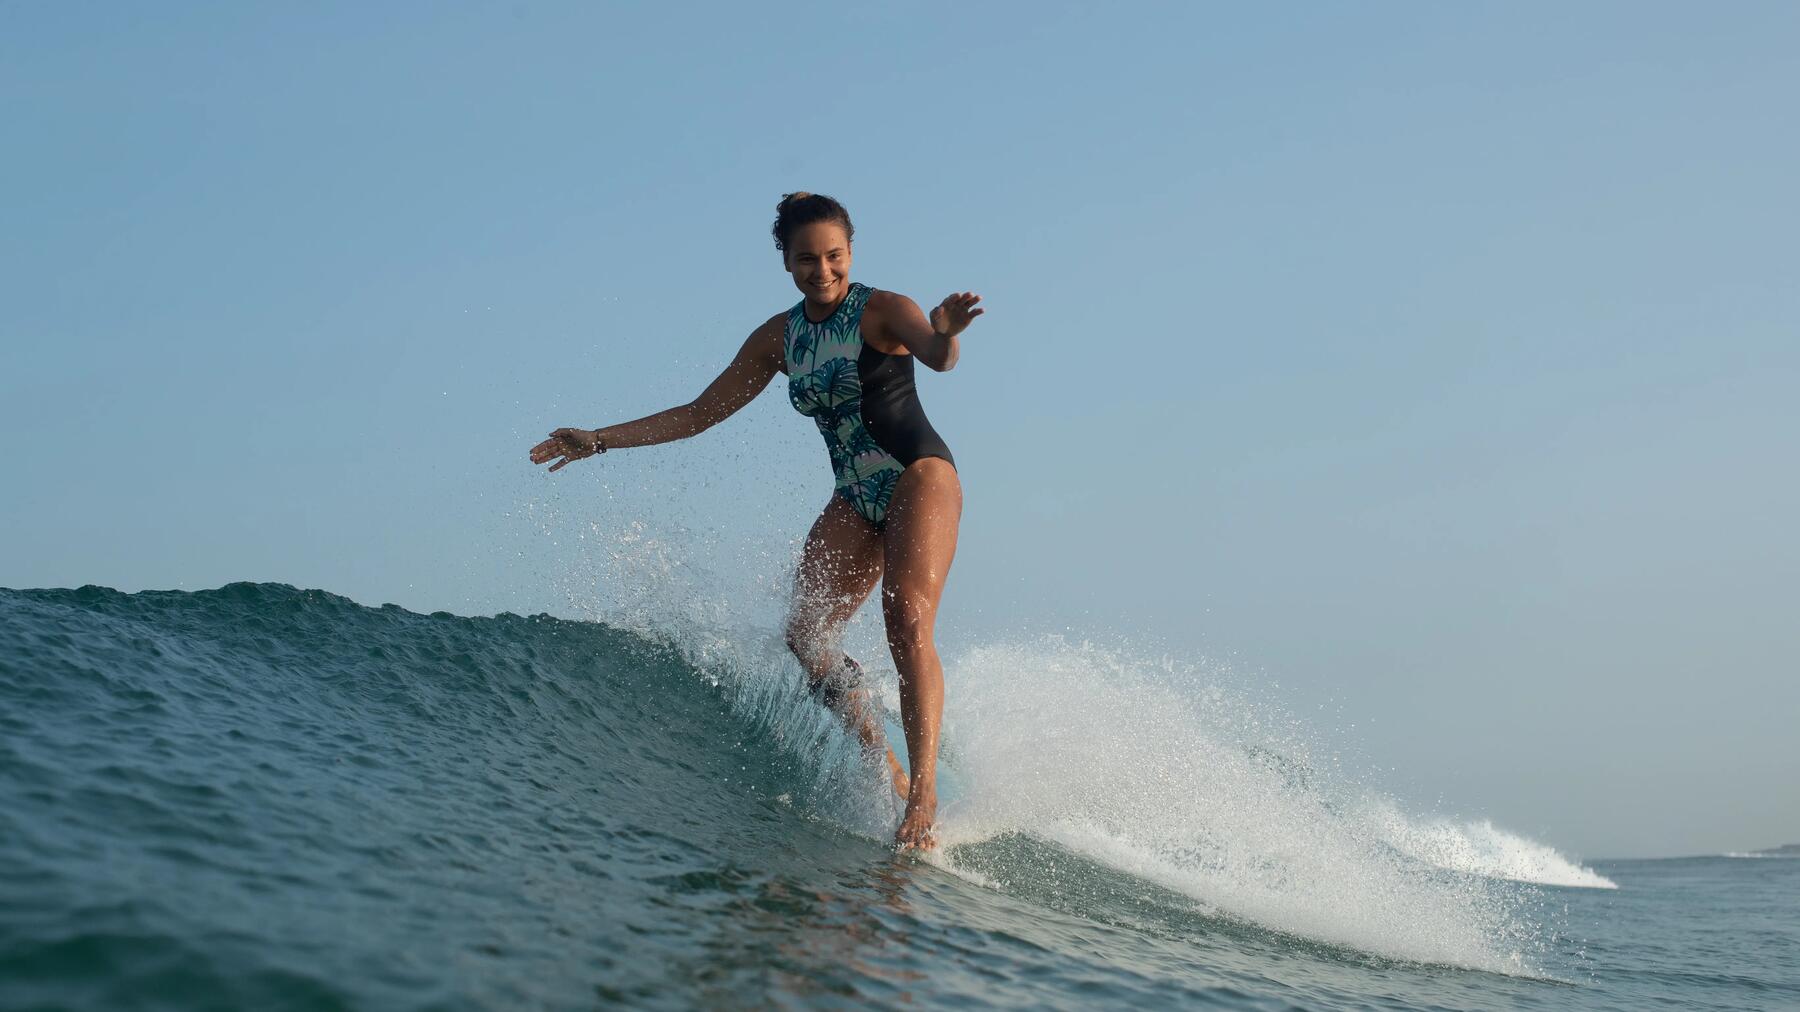 Hoe kan je beter leren surfen op kleine golven?